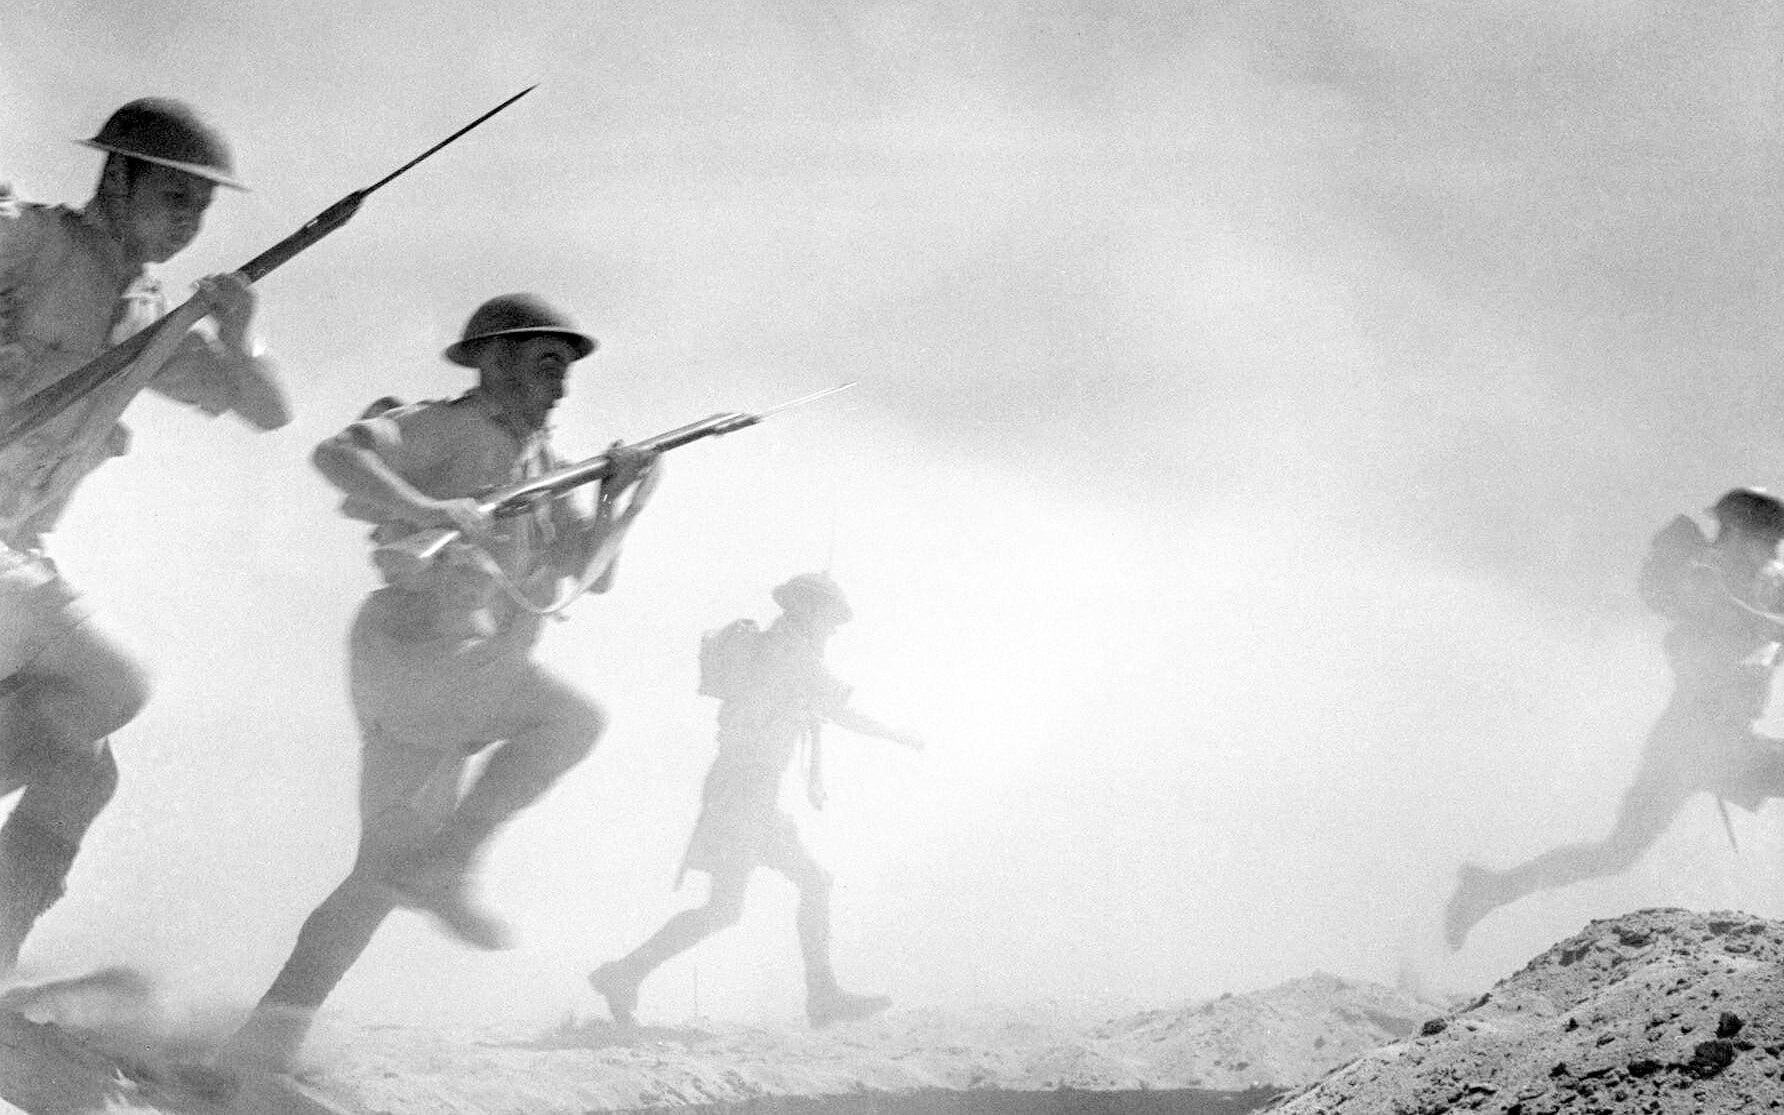 חיילי הצבא הבריטי בקרב באל-עלמיין, 24 באוקטובר 1942 (צילום: Chetwyn (Sgt), No 1 Army Film & Photographic Unit)